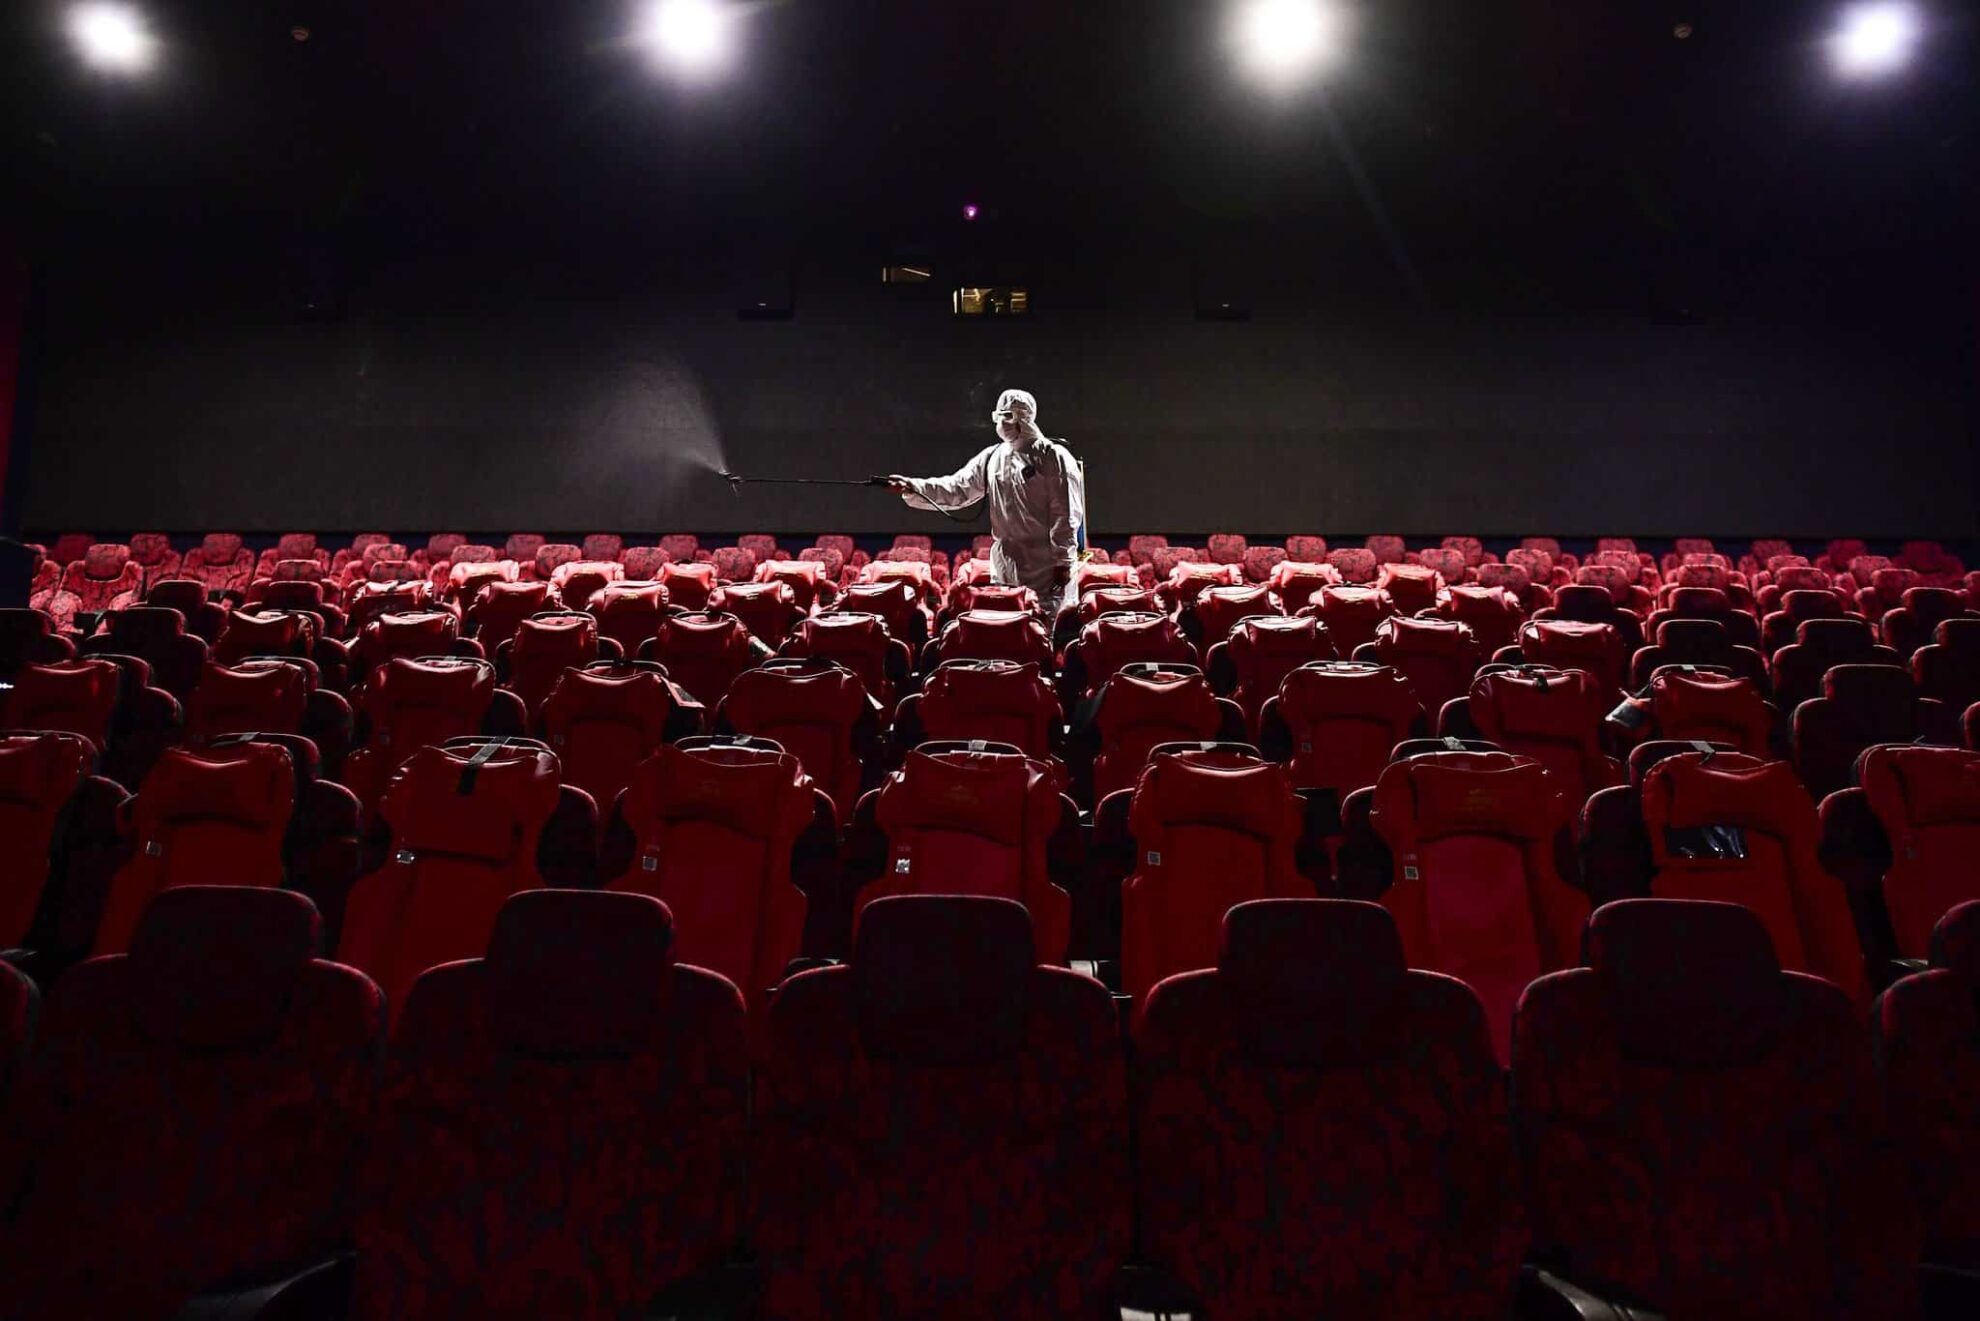 Cina: si riaprono i cinema, ma solo nelle regioni “a basso rischio contagio”